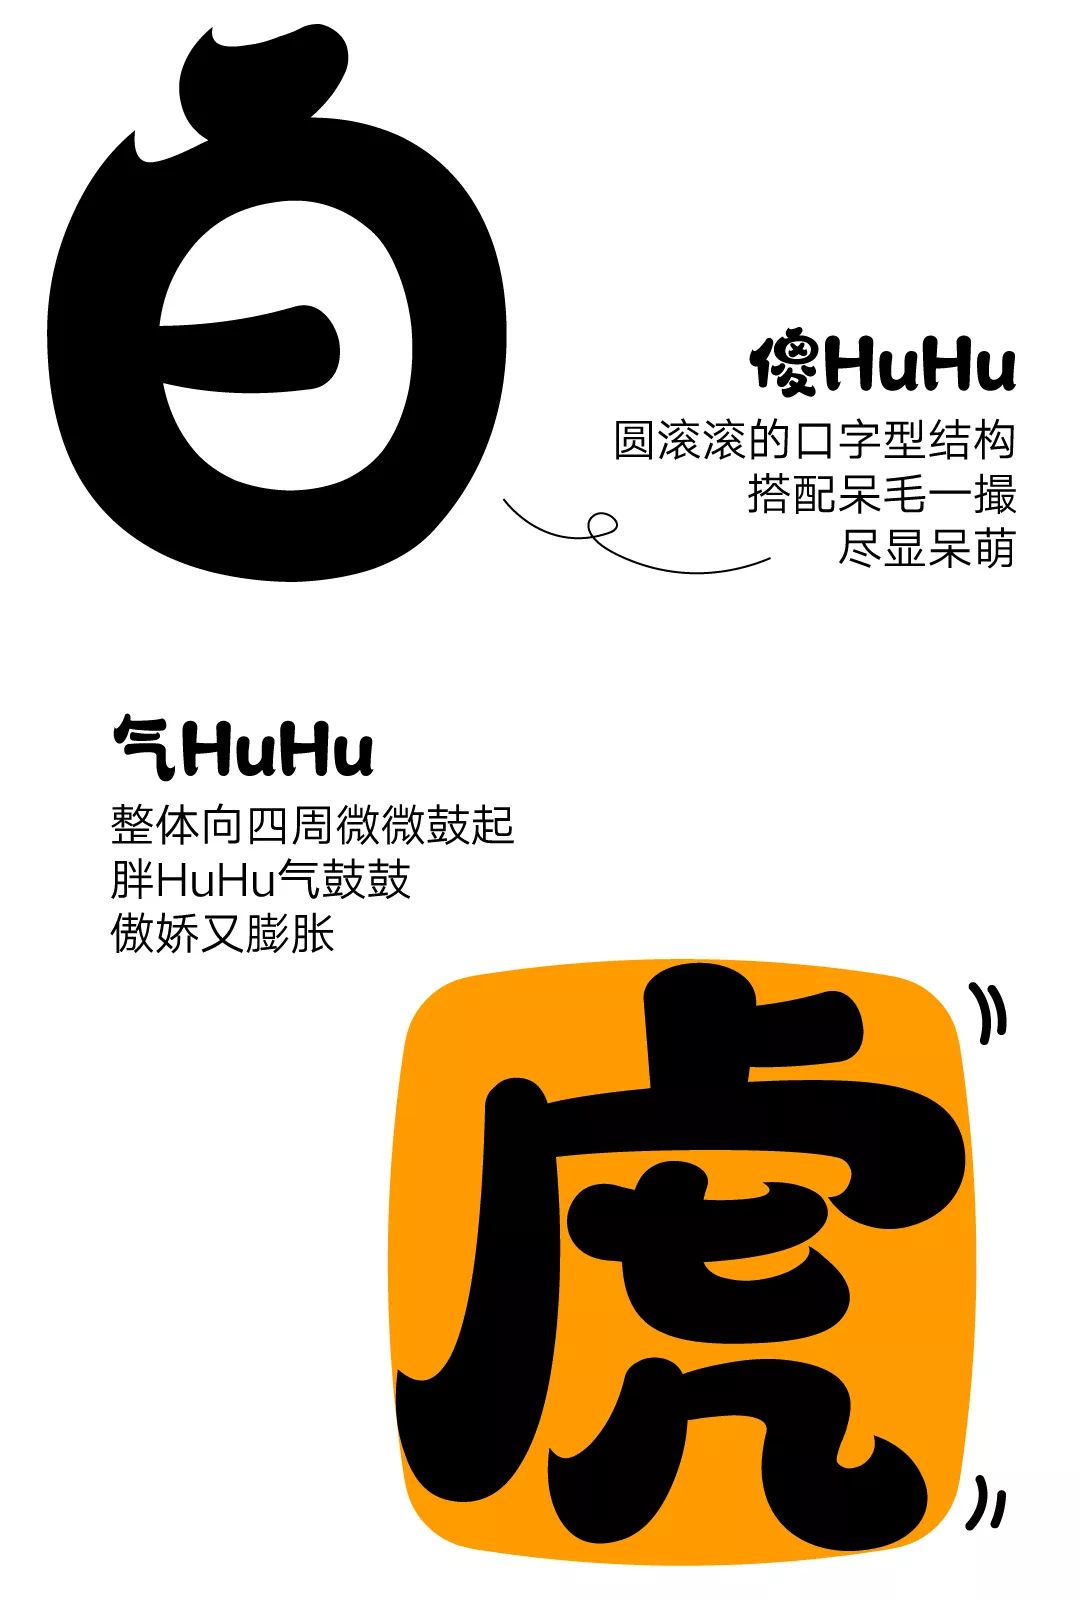 汉仪字库2022年第一款字体汉仪胖HuHu上线啦-字体视界 image